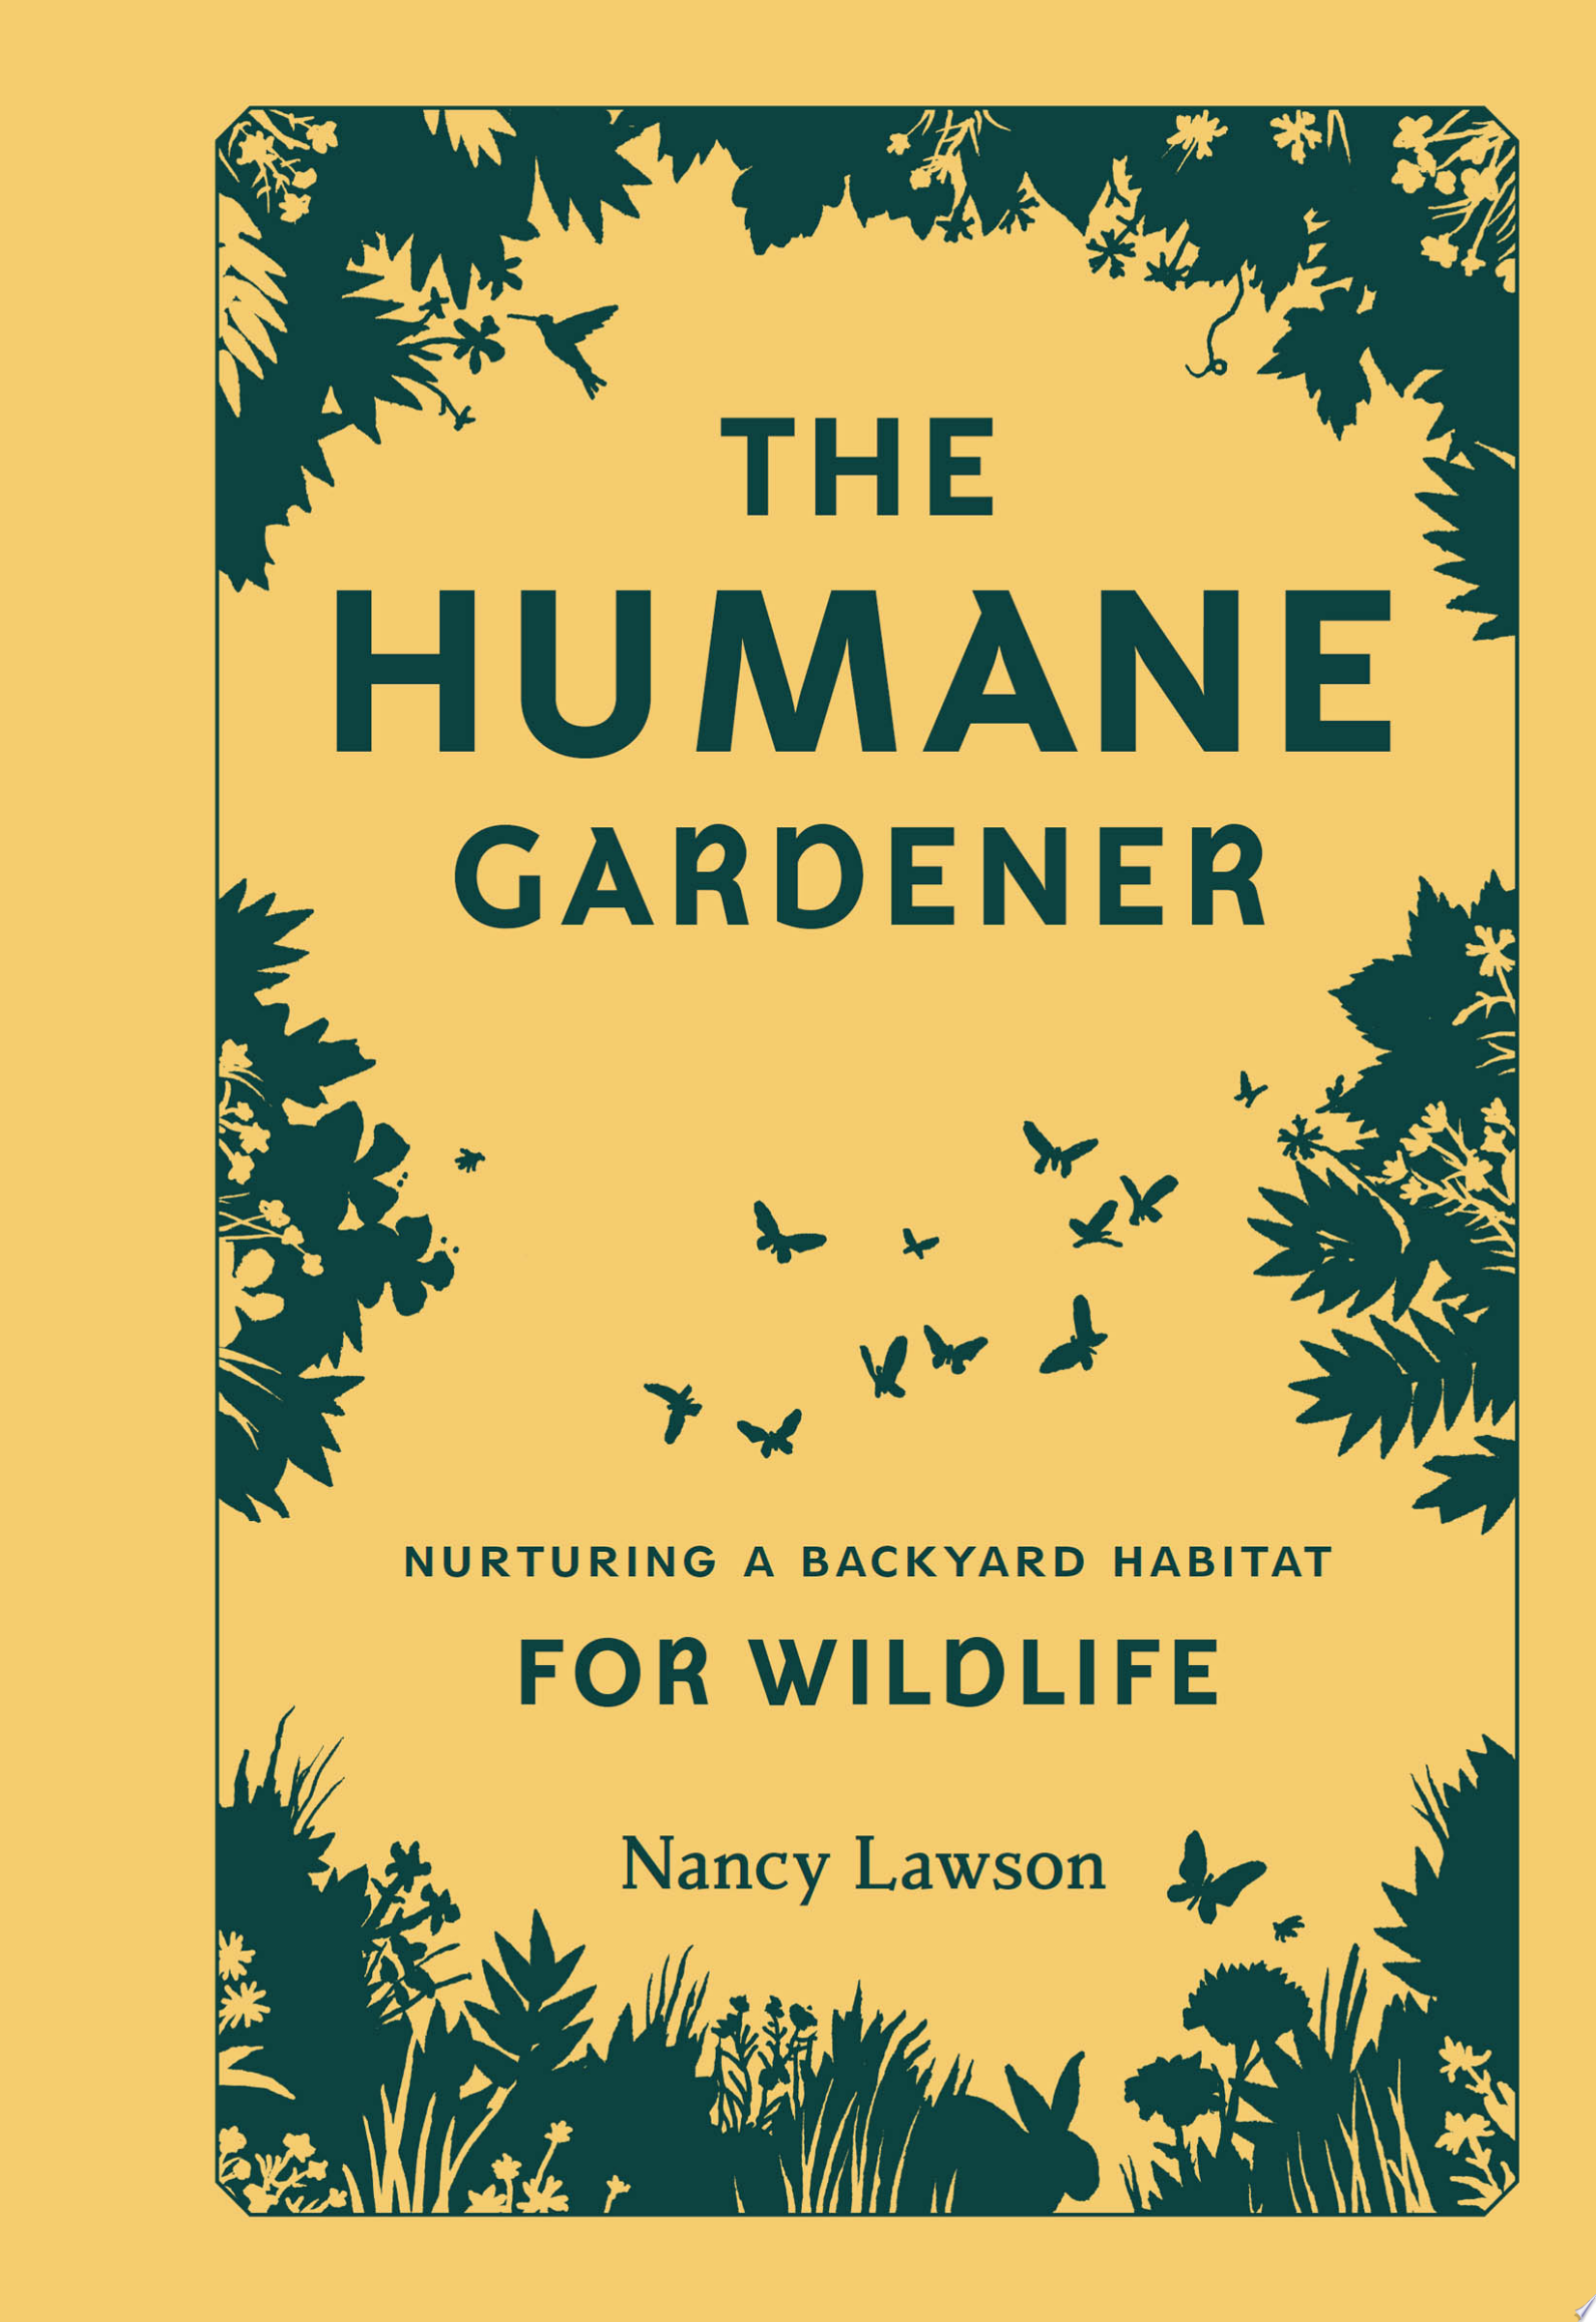 Image for "The Humane Gardener"